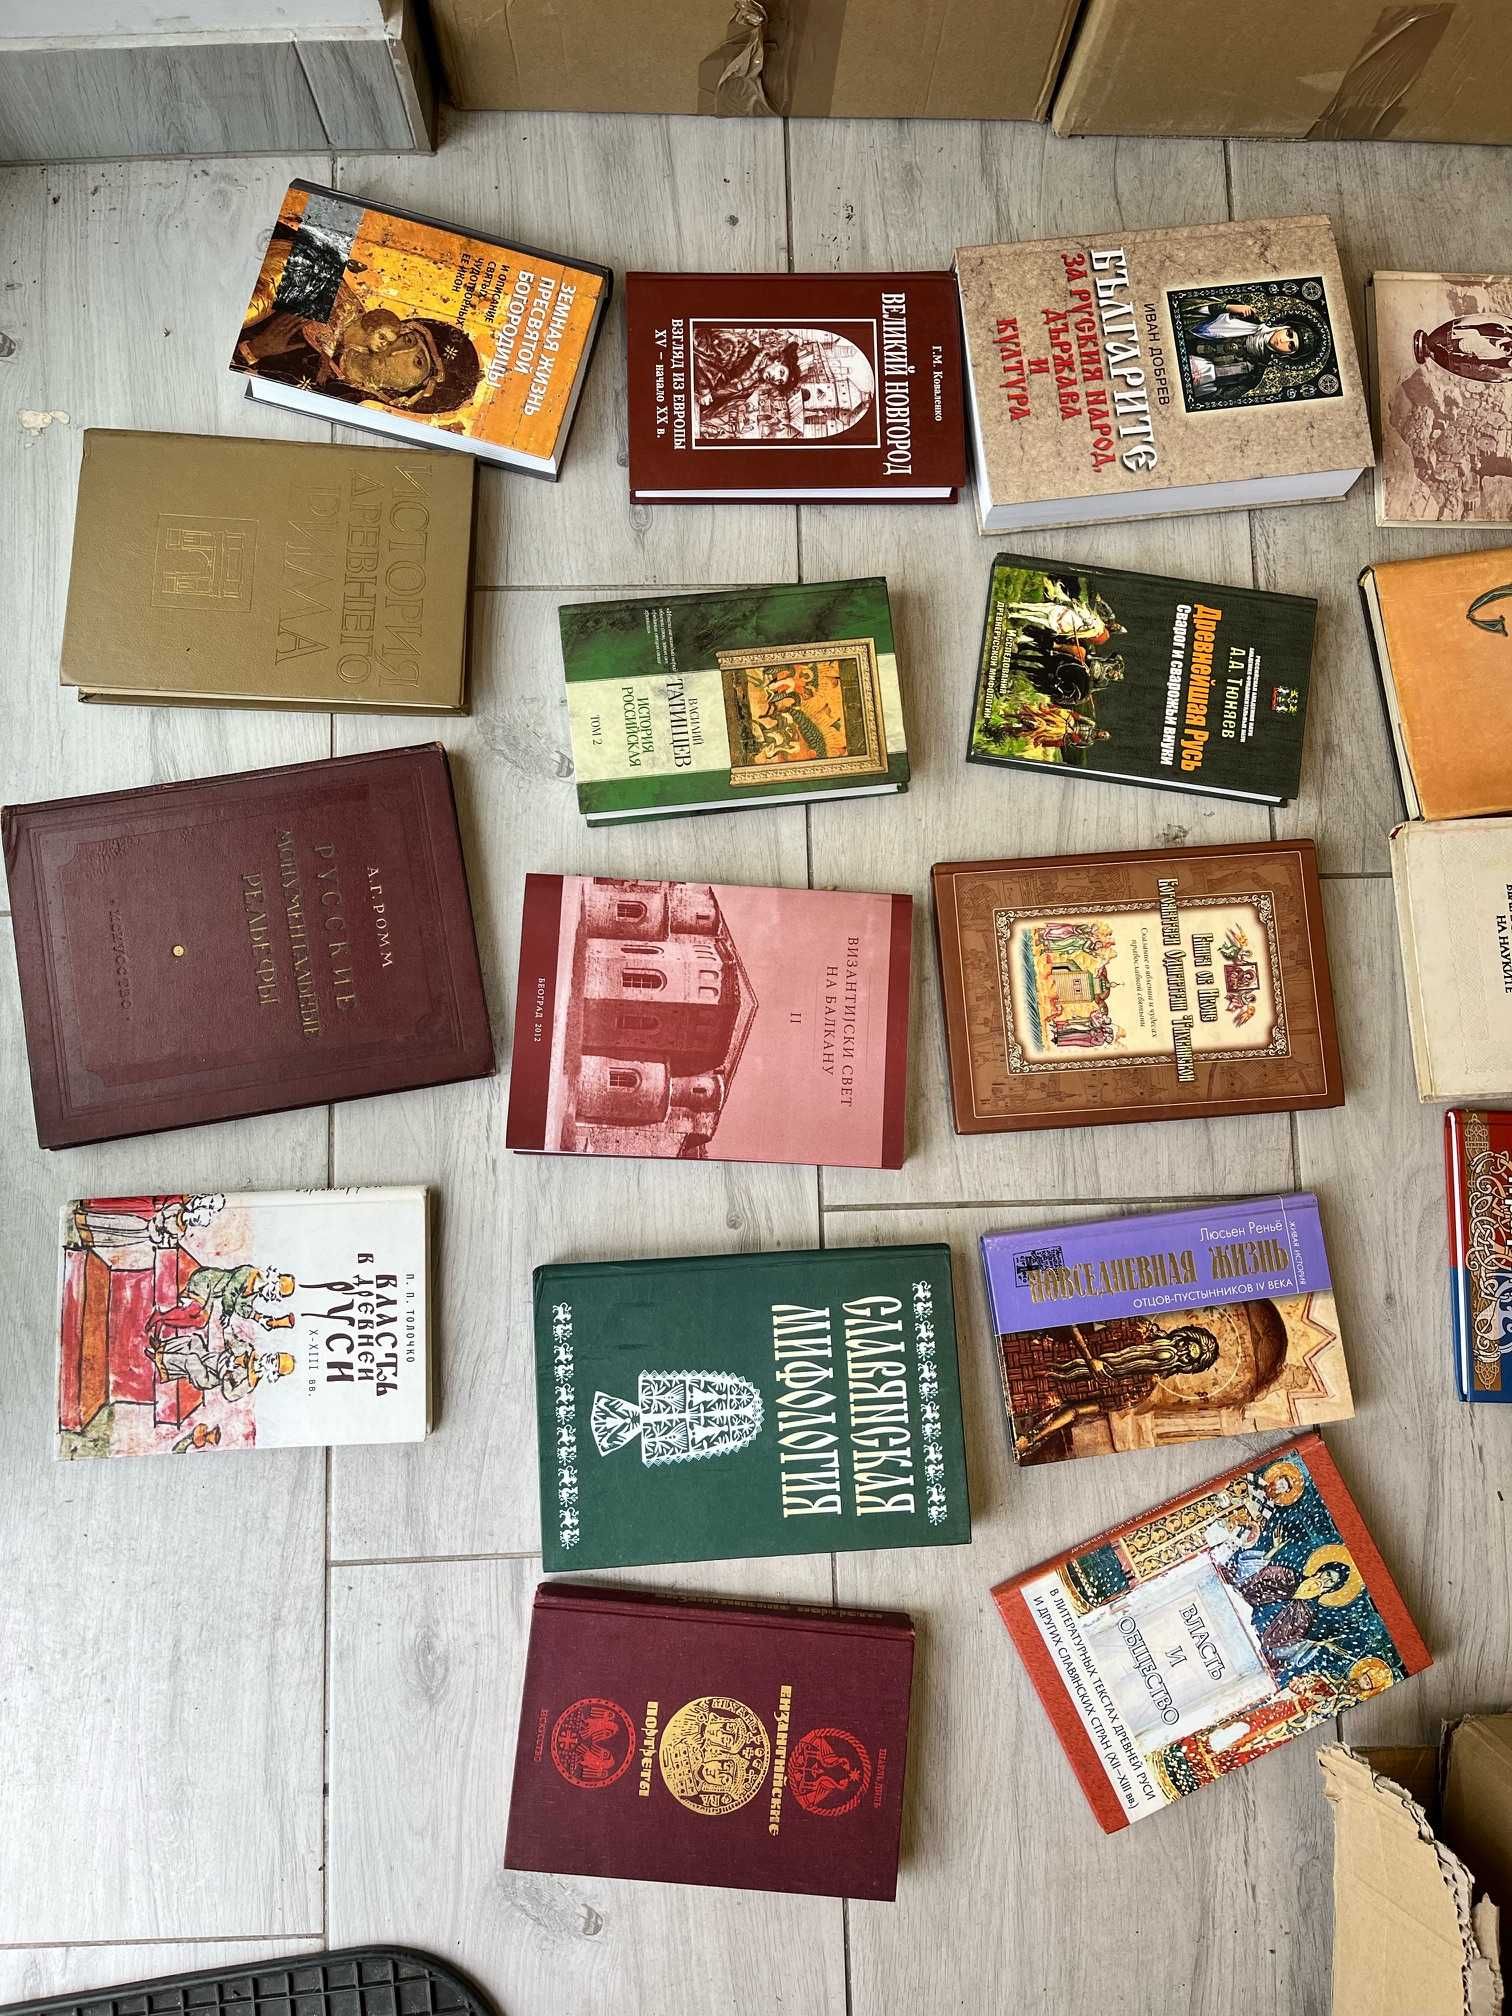 Książki naukowe w języku rosyjski/ukraińskim/bułgarskim